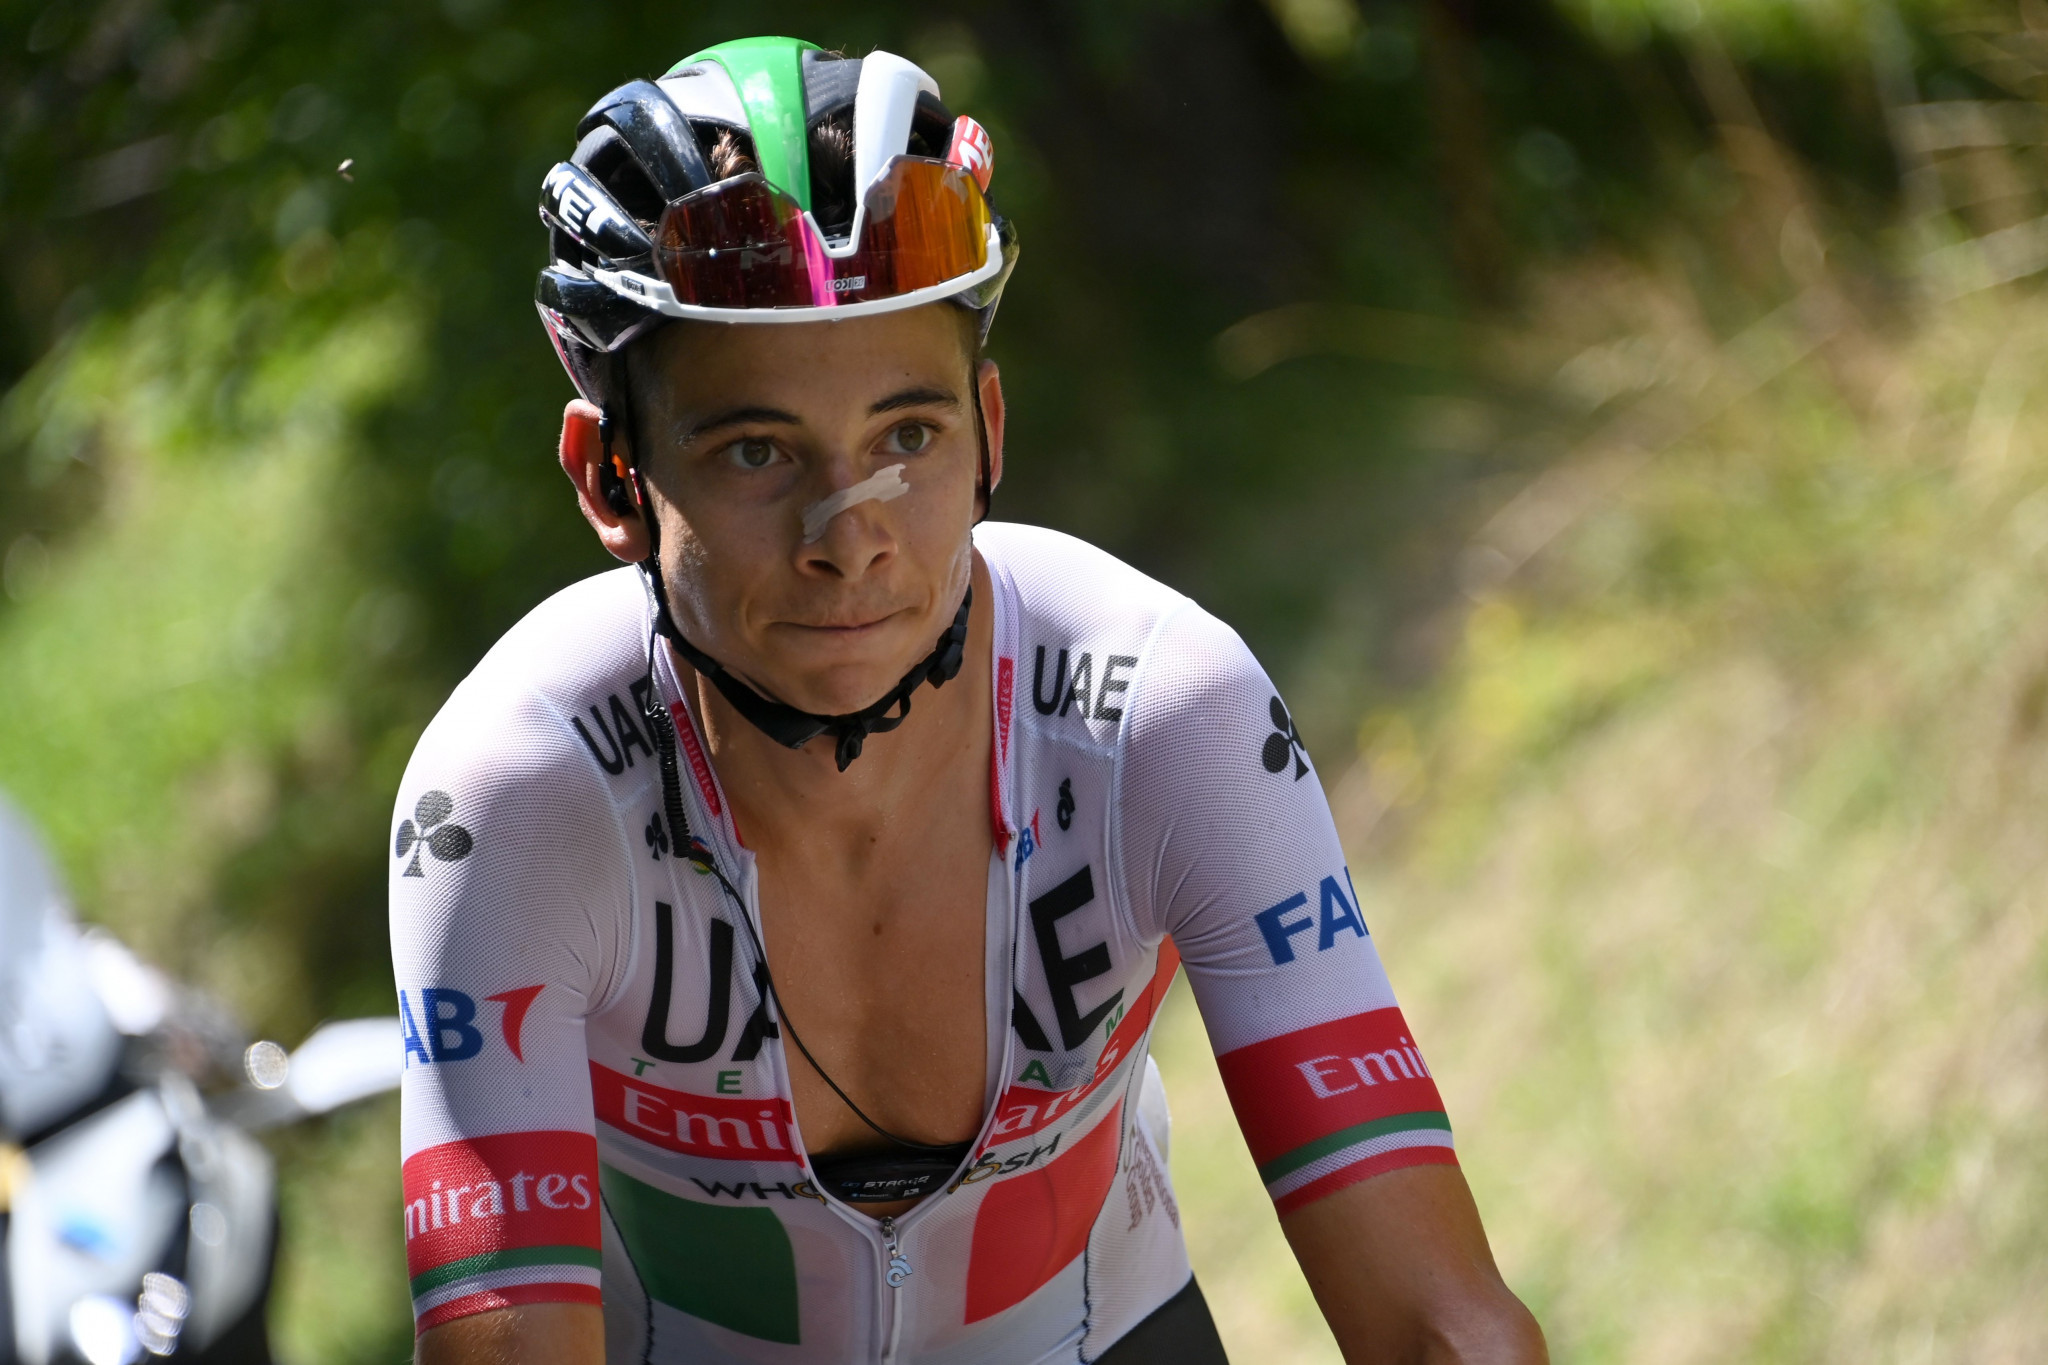 Formolo secures solo stage win as Roglič extends Critérium du Dauphiné race lead